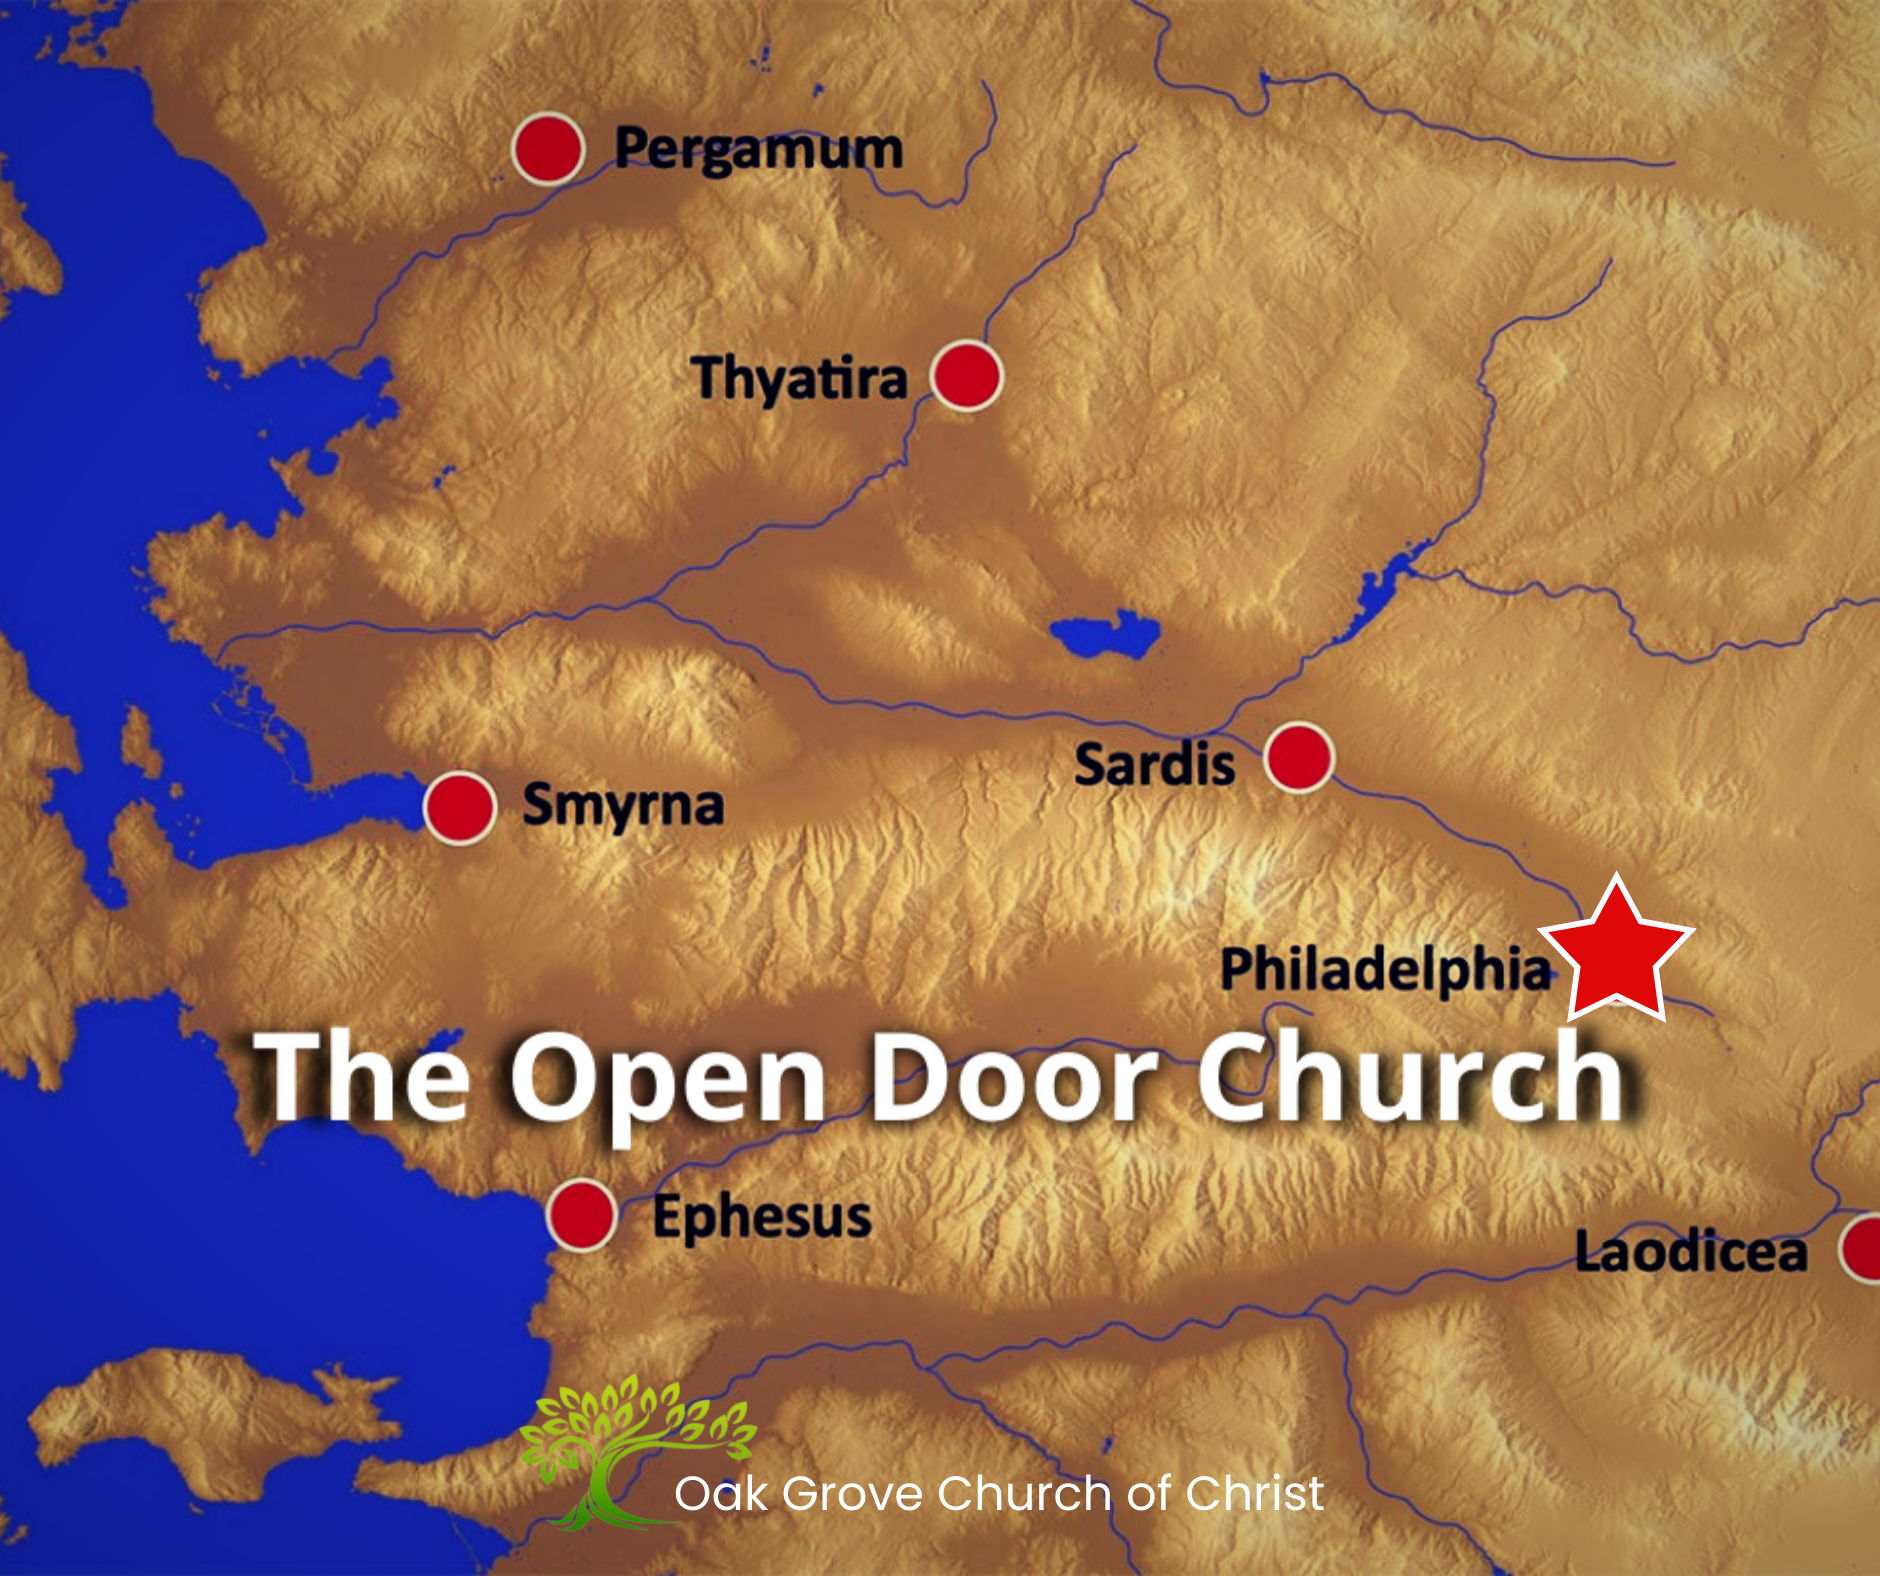 The Open Door Church – Philadelphia